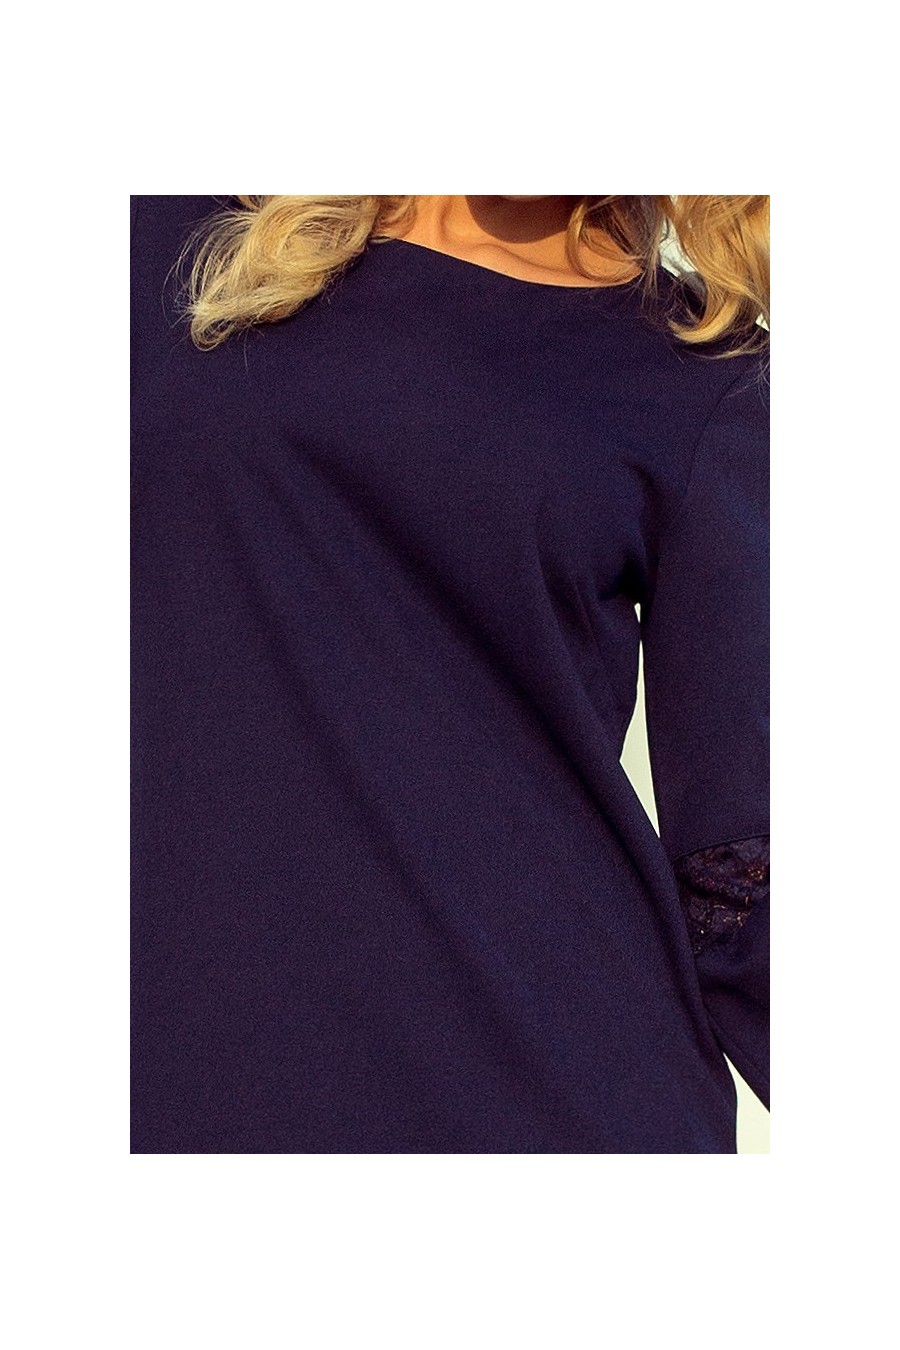 190-6 MARGARET šaty s krajkou na rukávech - tmavě modrá